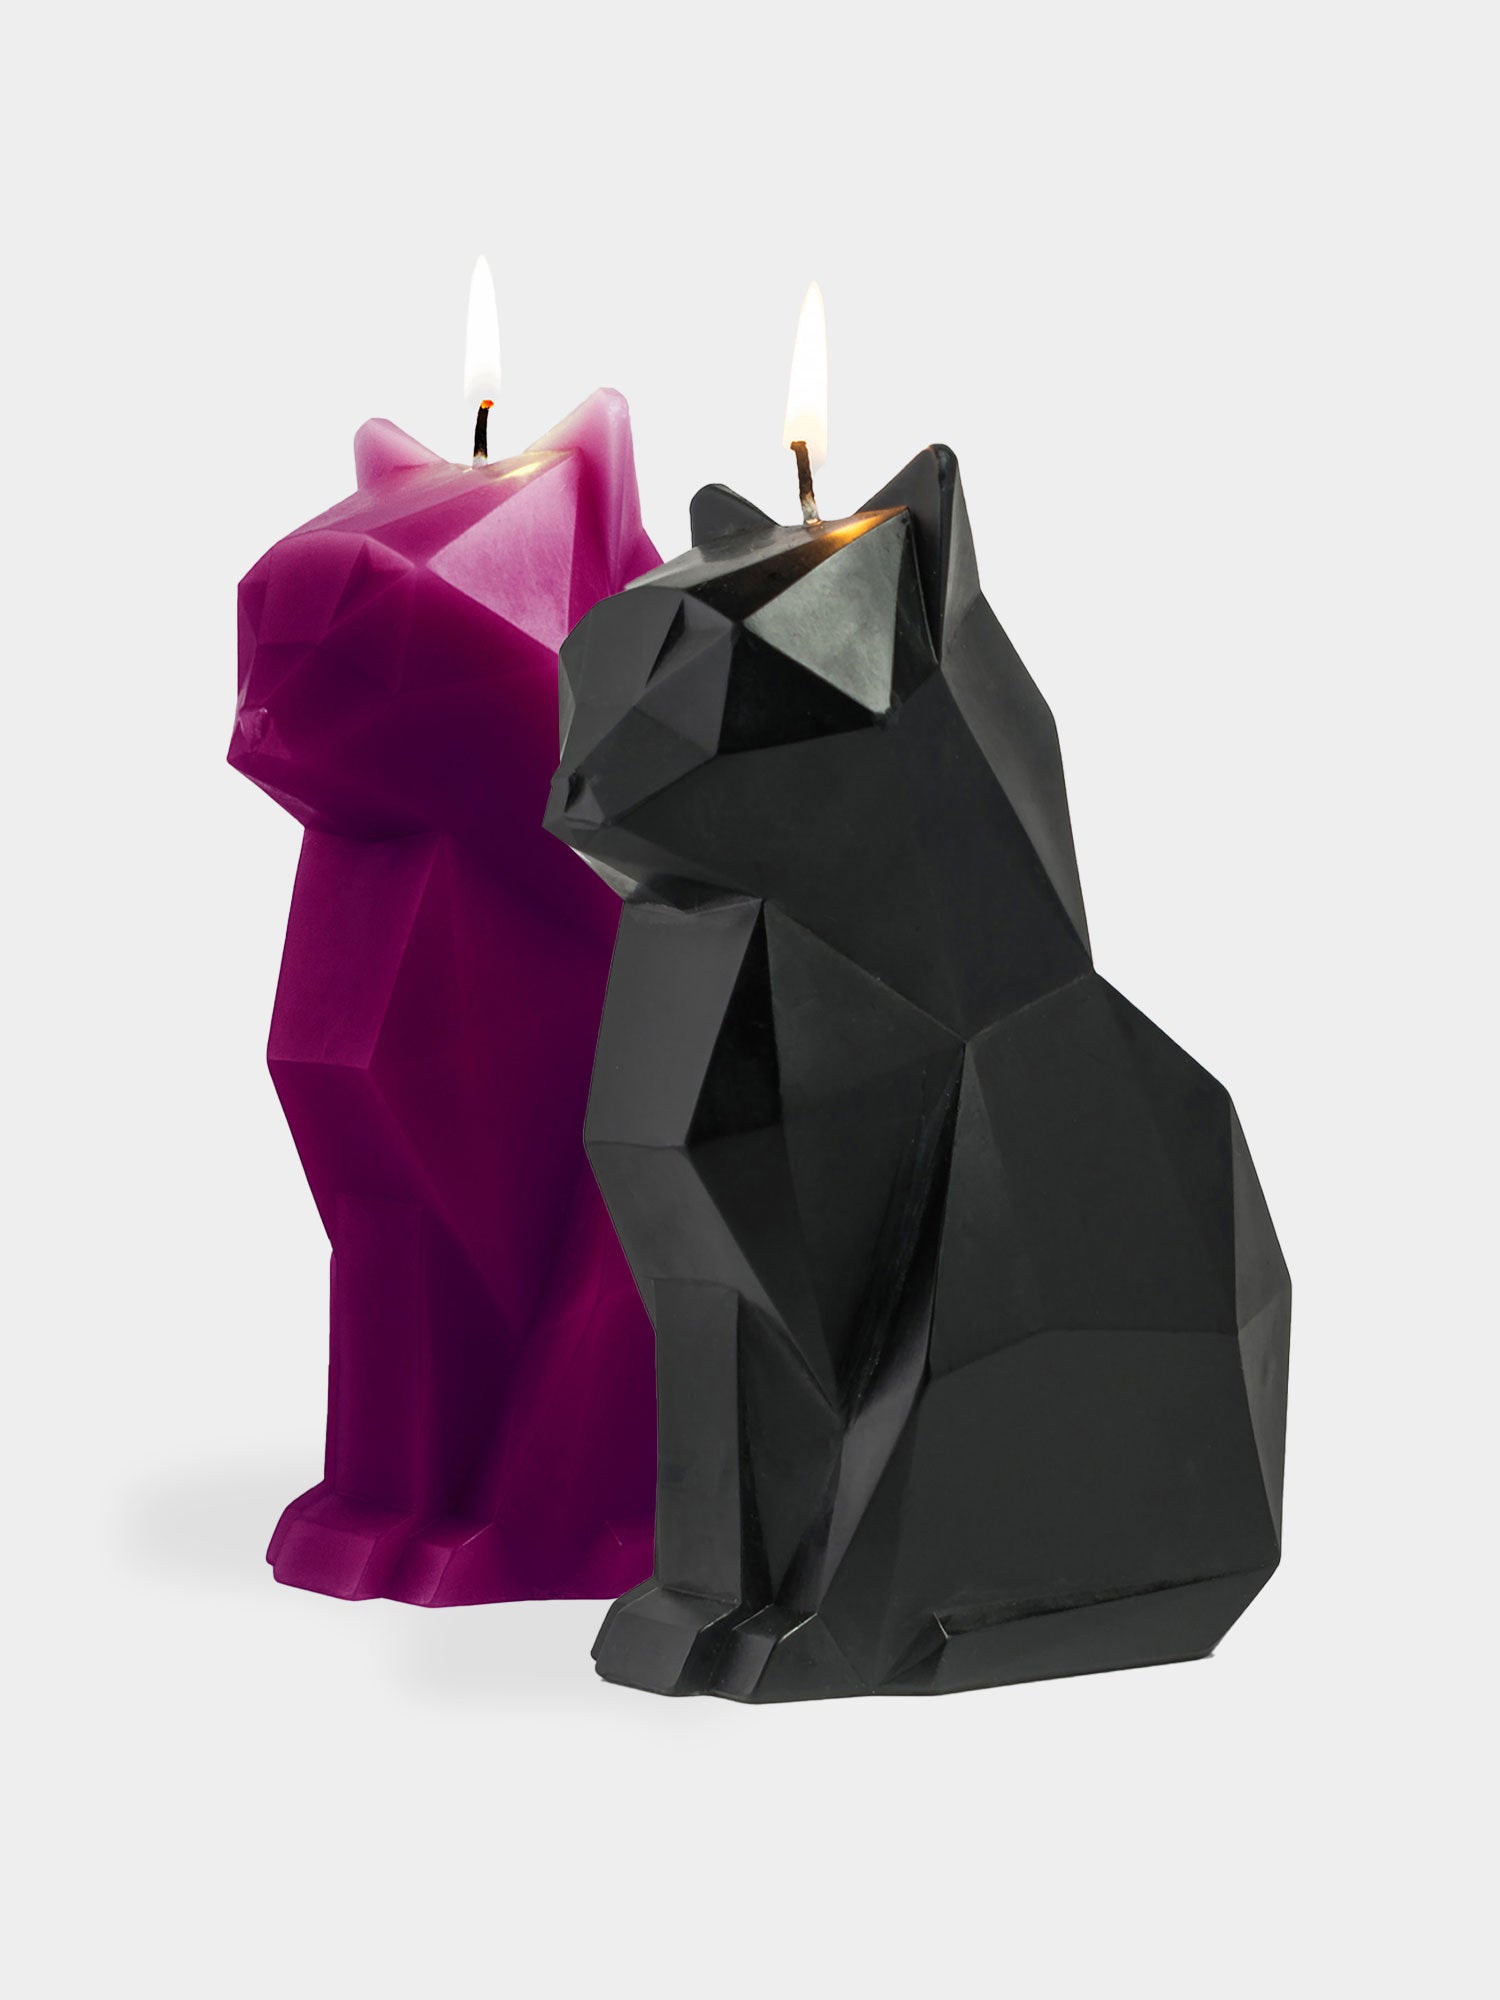 PyroPet Kisa – Bougie squelette de chat – Cadeau pour femme – Décoration de  chambre gothique – Bougies uniques en forme de chat effrayant, noir